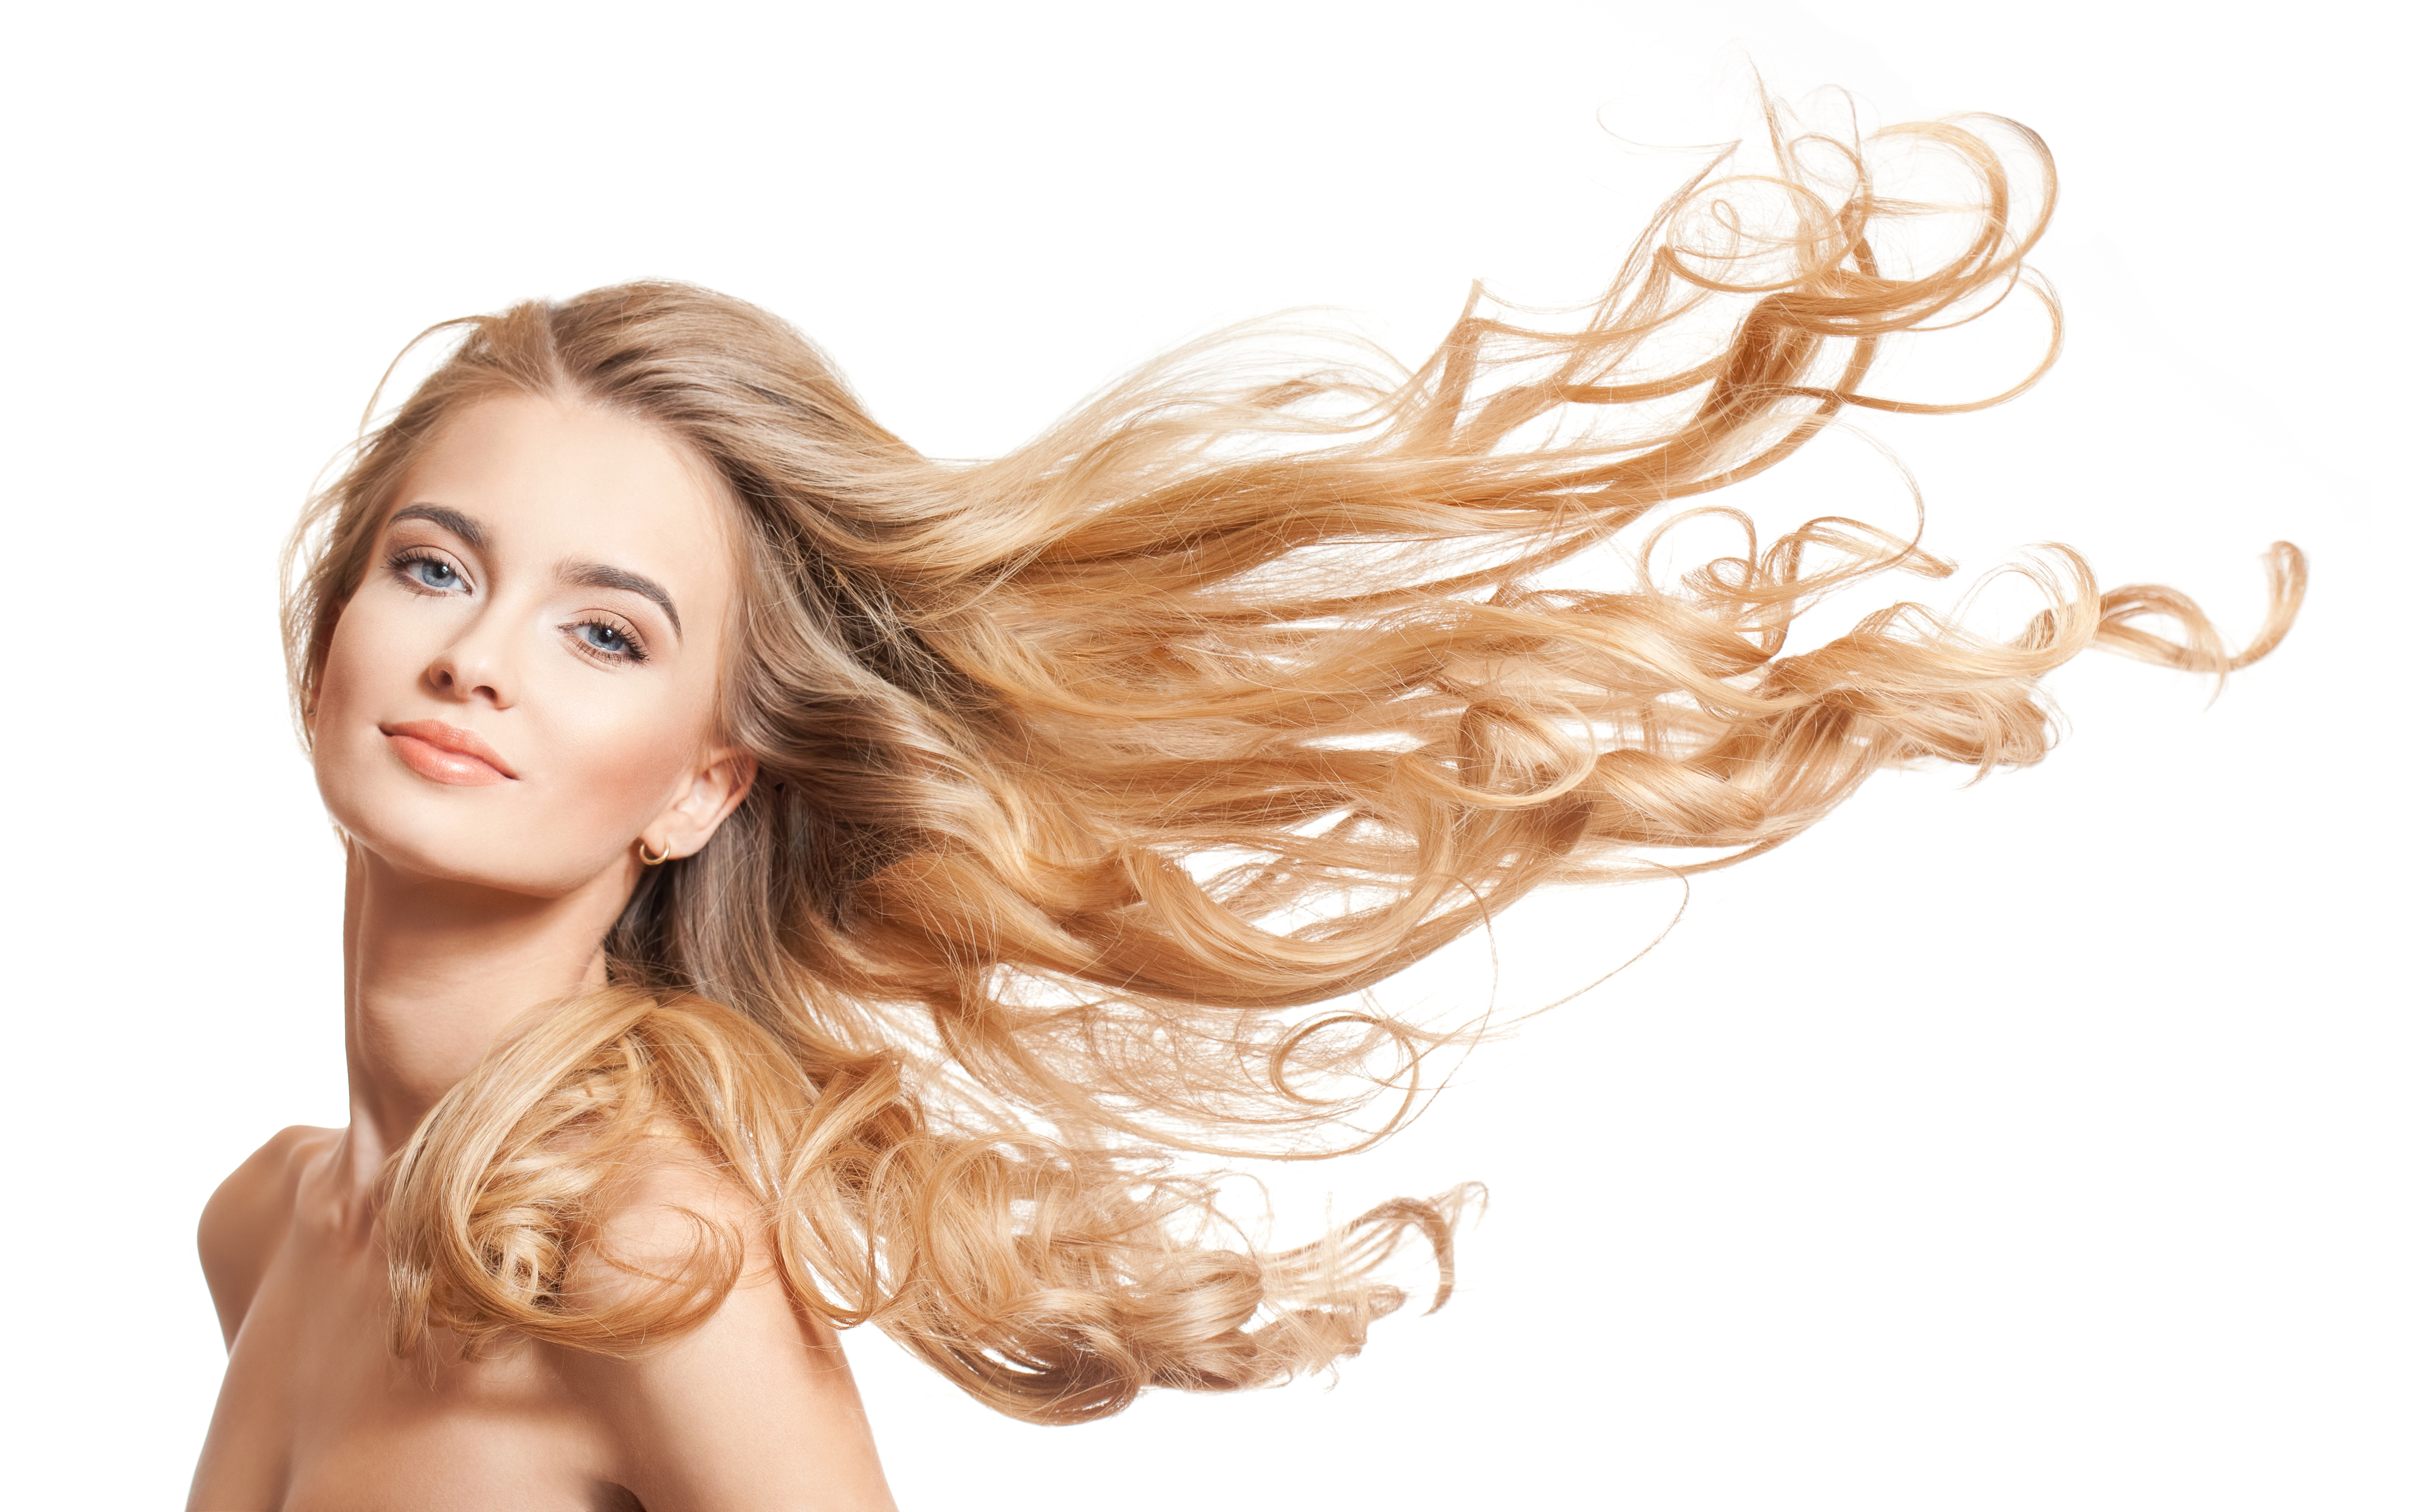 Une femme aux longs cheveux blonds | Source : Shutterstock